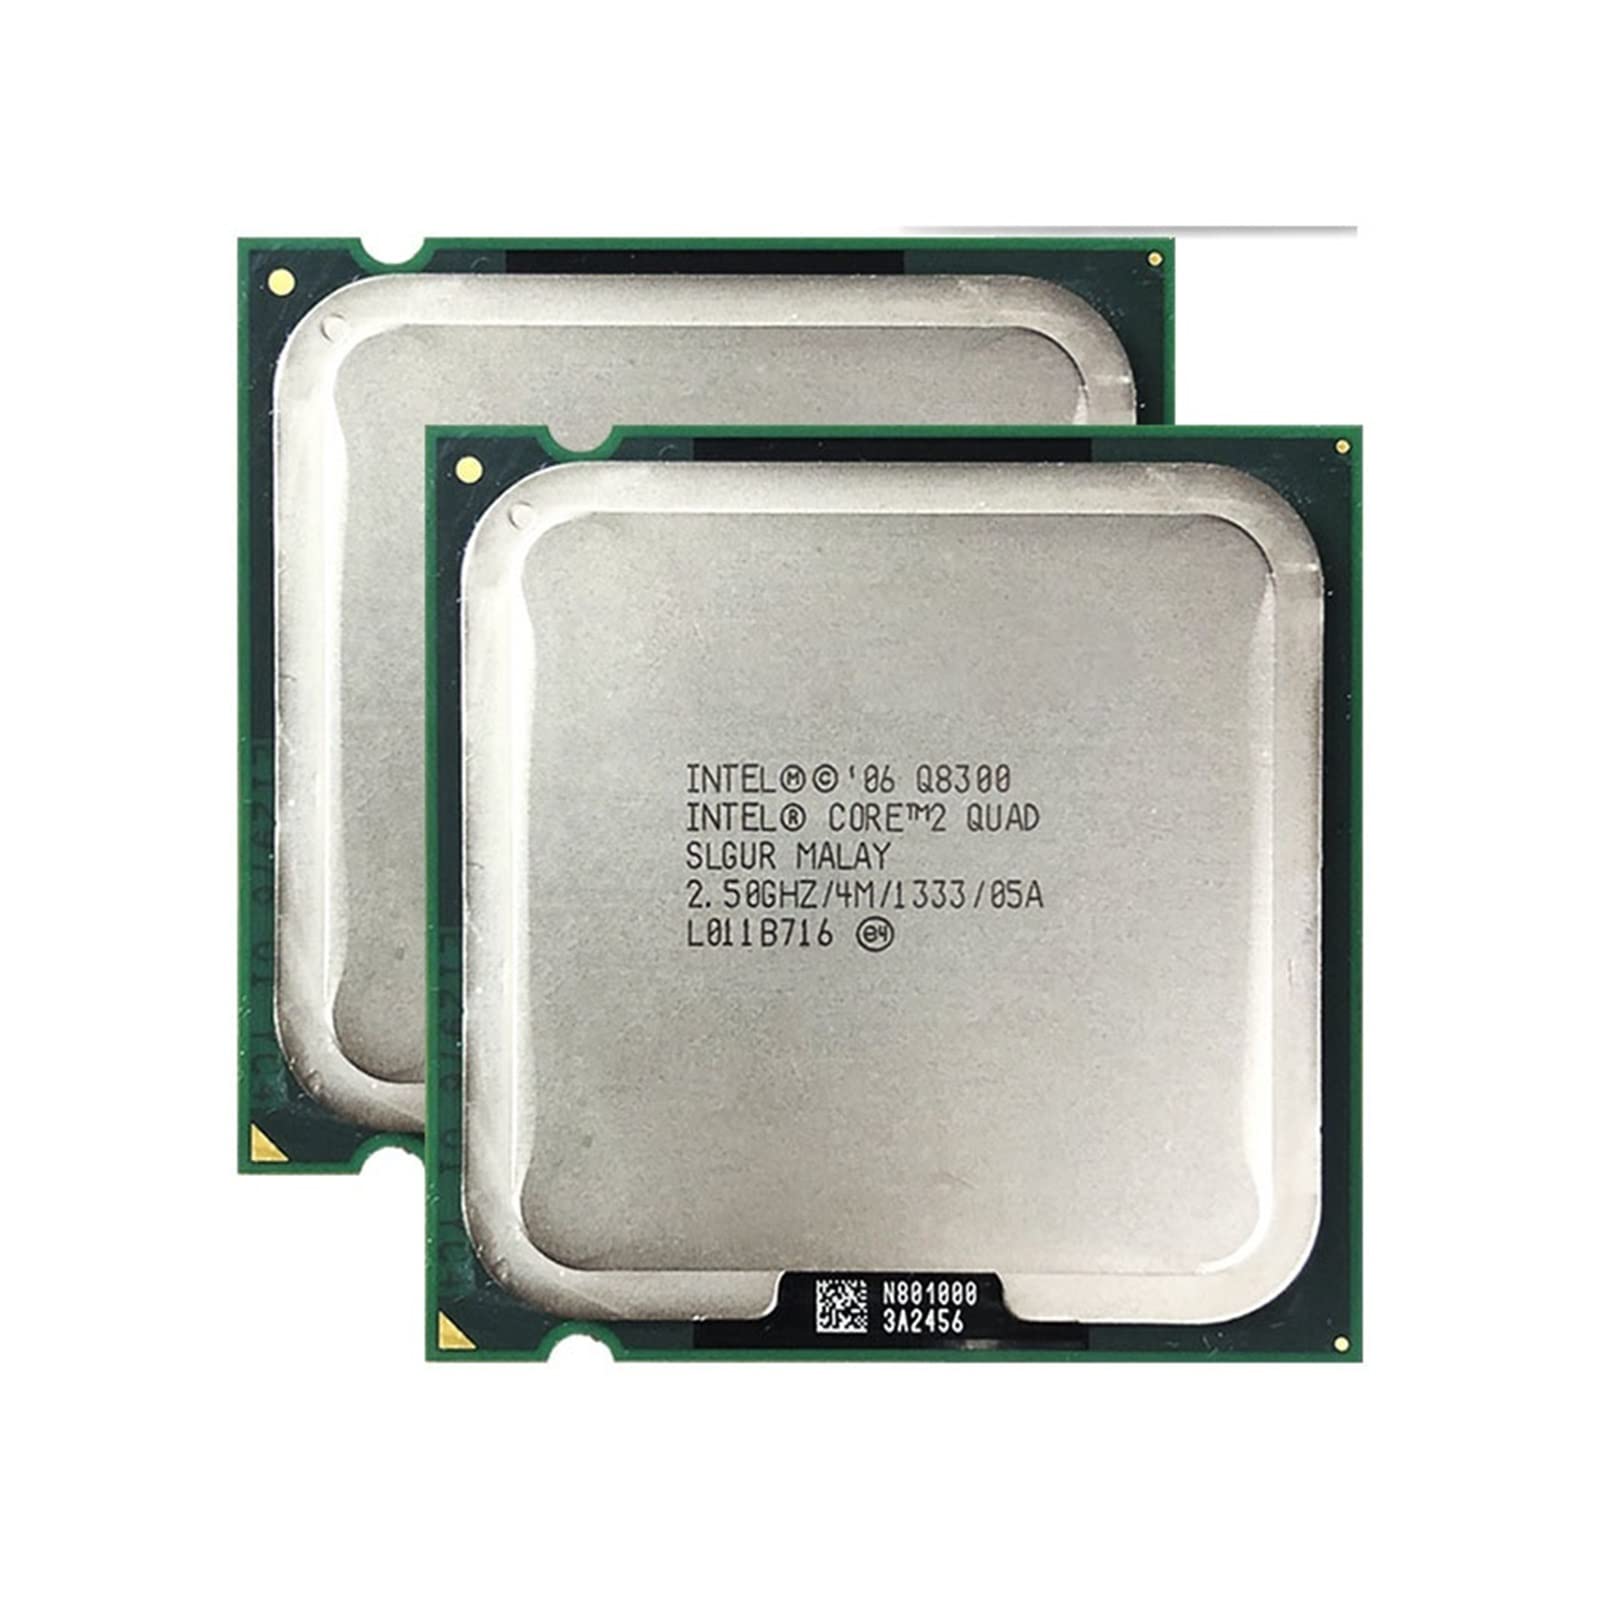 MovoLs Zwei CPU-Prozessoren, kompatibel mit 2 Quad Q8300 2,5 GHz Quad Core Quad Thread 4M 95W LGA 775 Verbessern Sie die Laufgeschwindigkeit des Compute